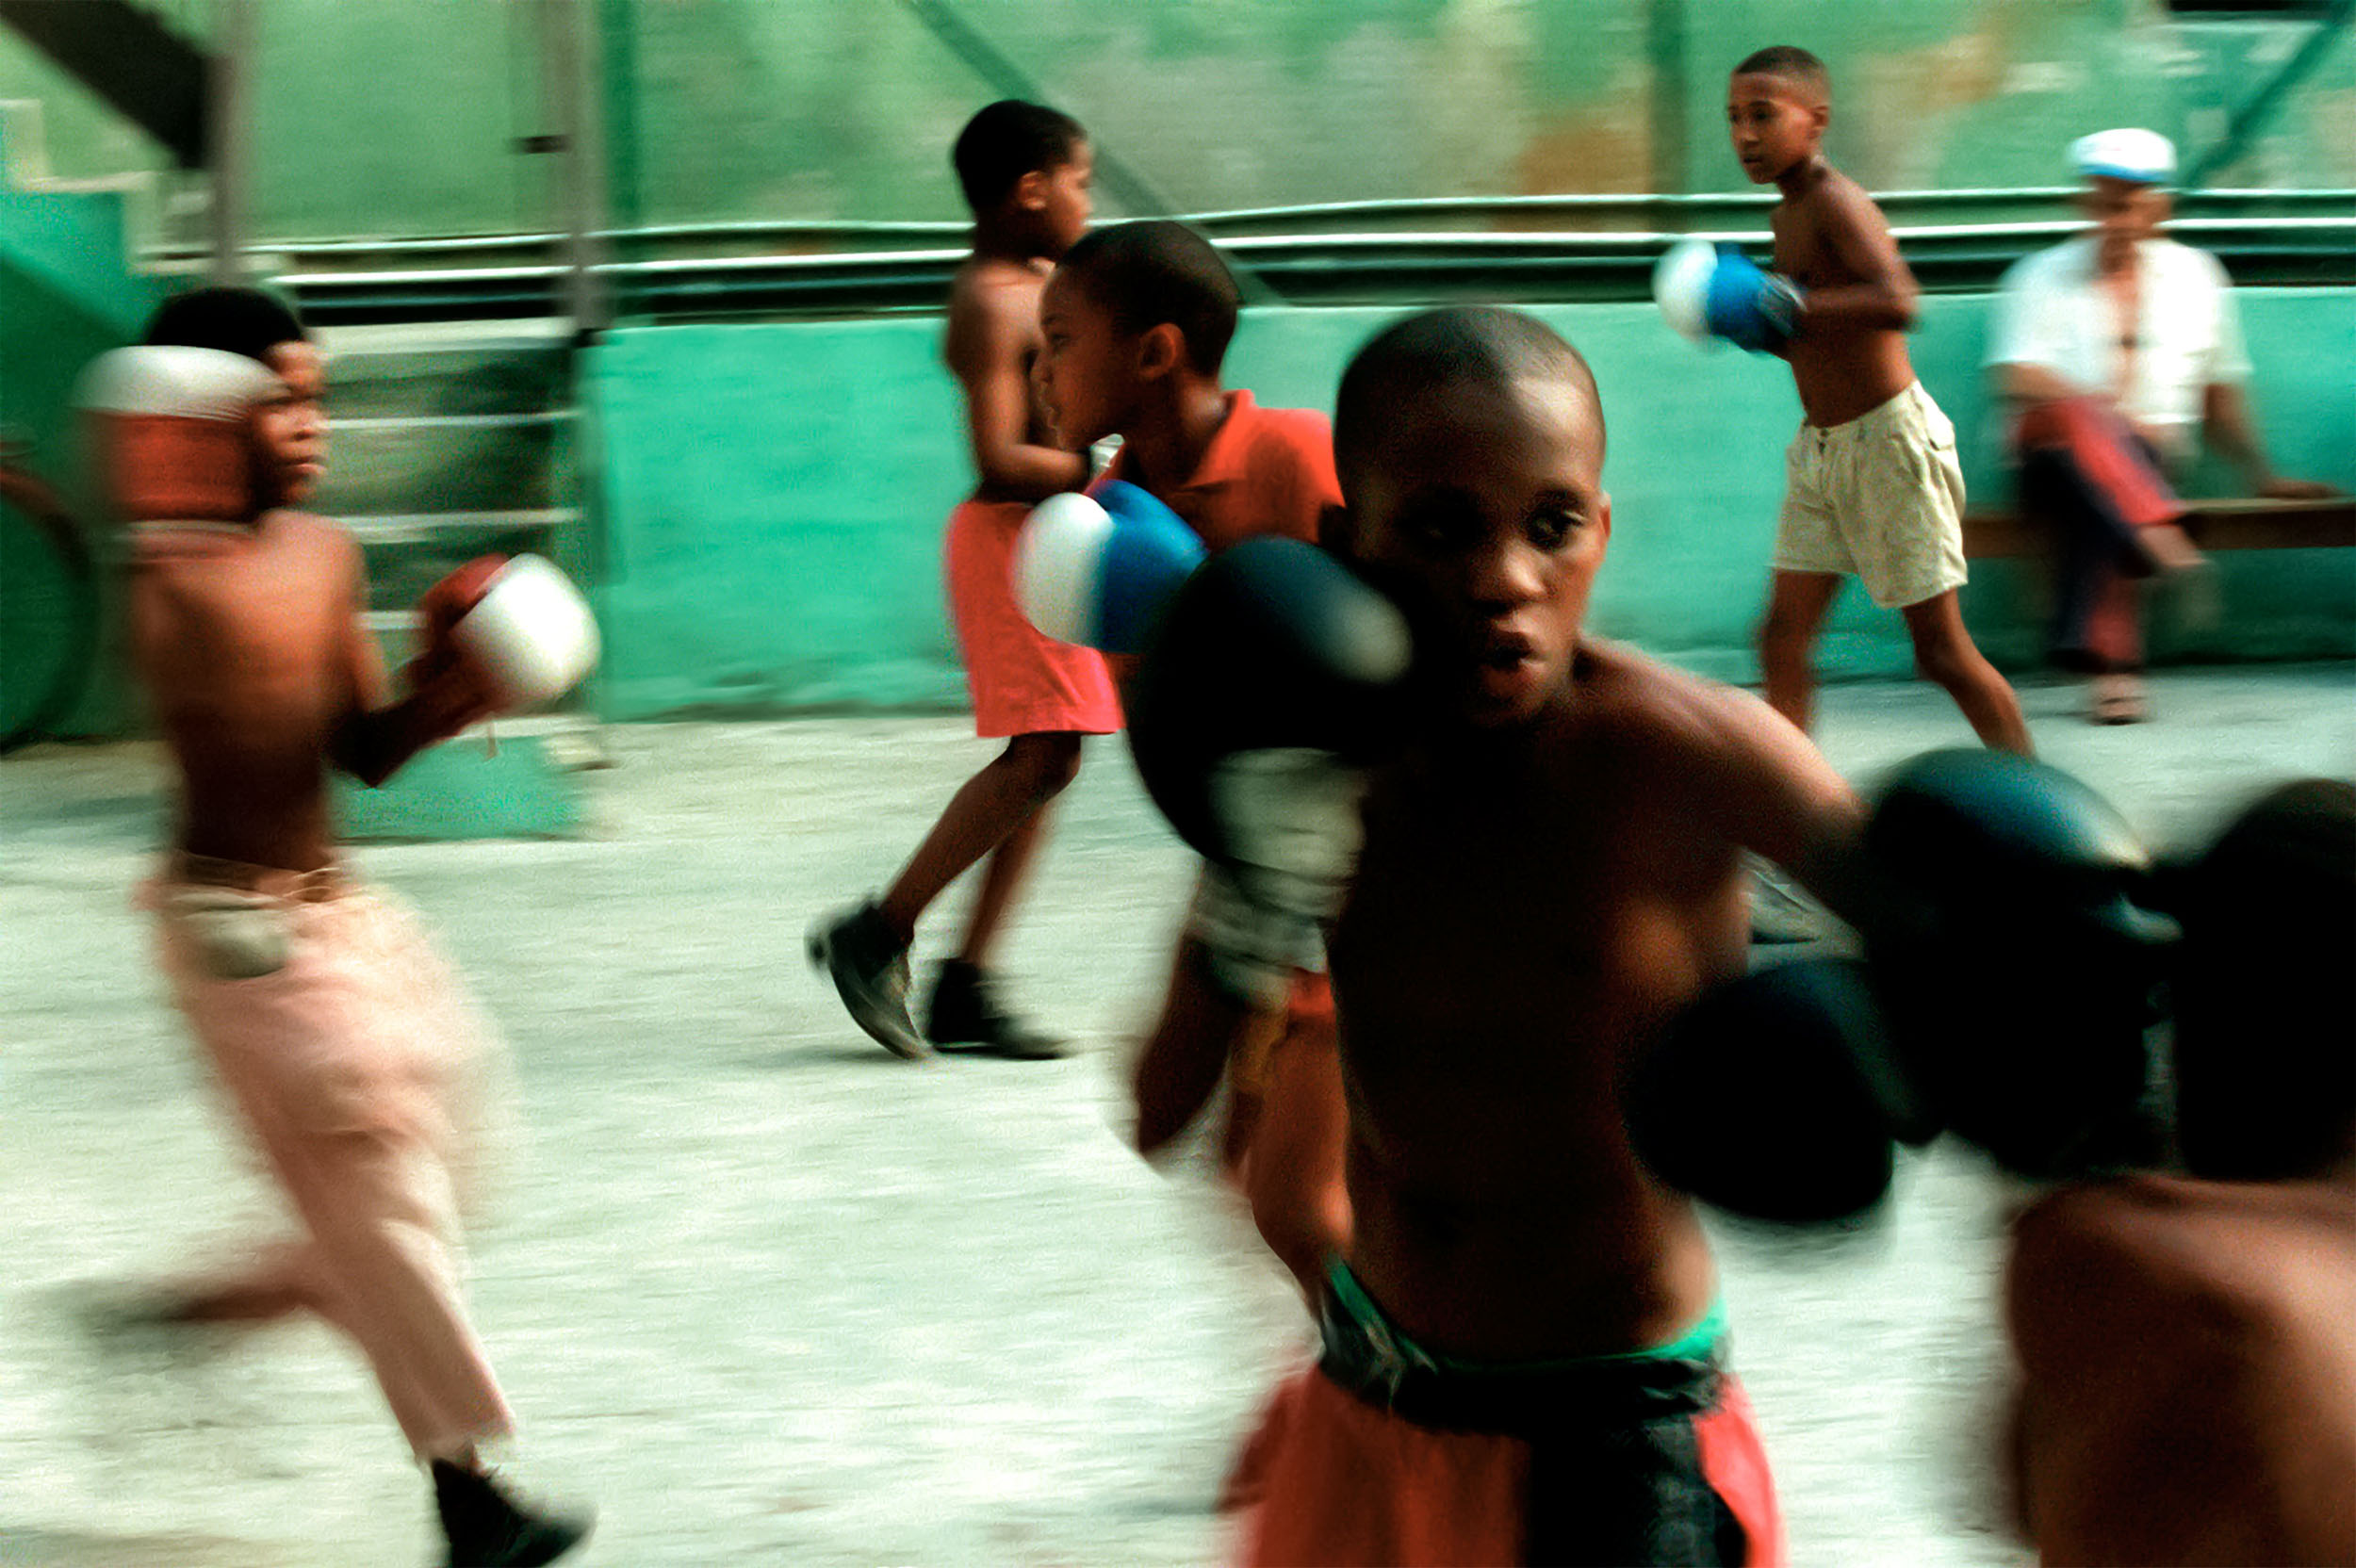 Boxing-Cuba-Havana-gym-08-web.JPG